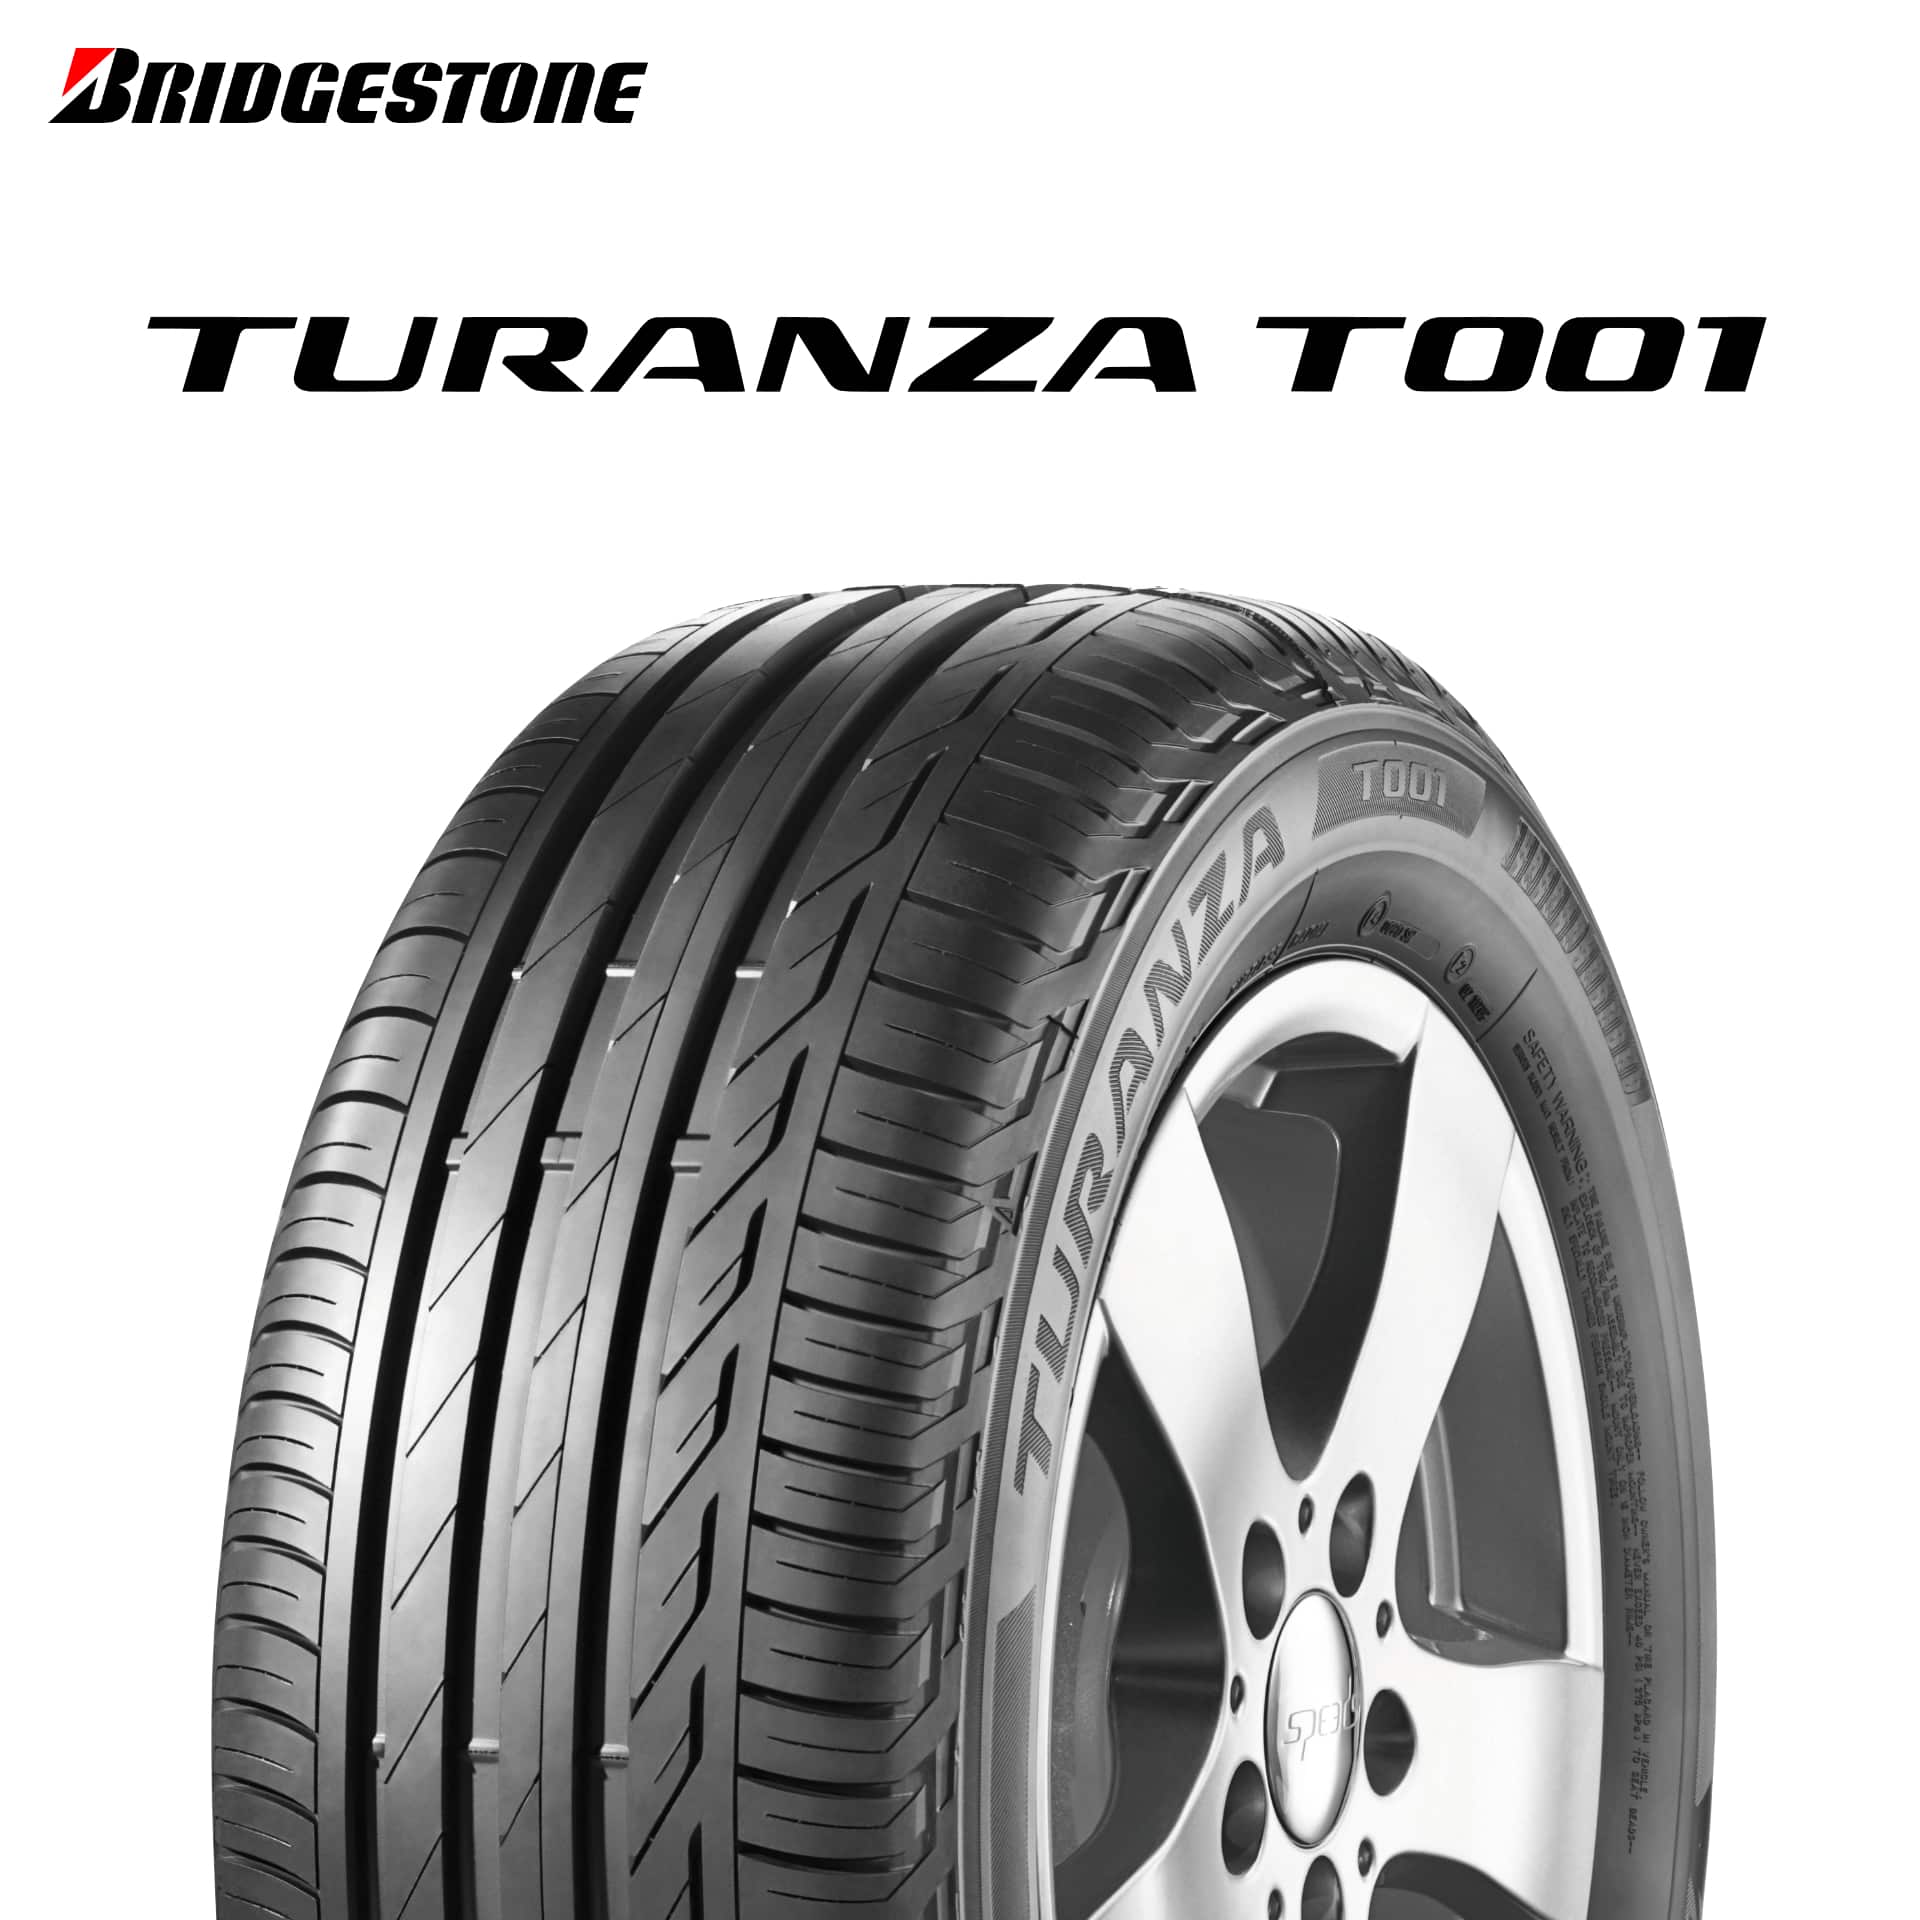 21年製 215/50R18 92W AO ブリヂストン TURANZA T001 (トランザT001) アウディ承認タイヤ 18インチ 新品